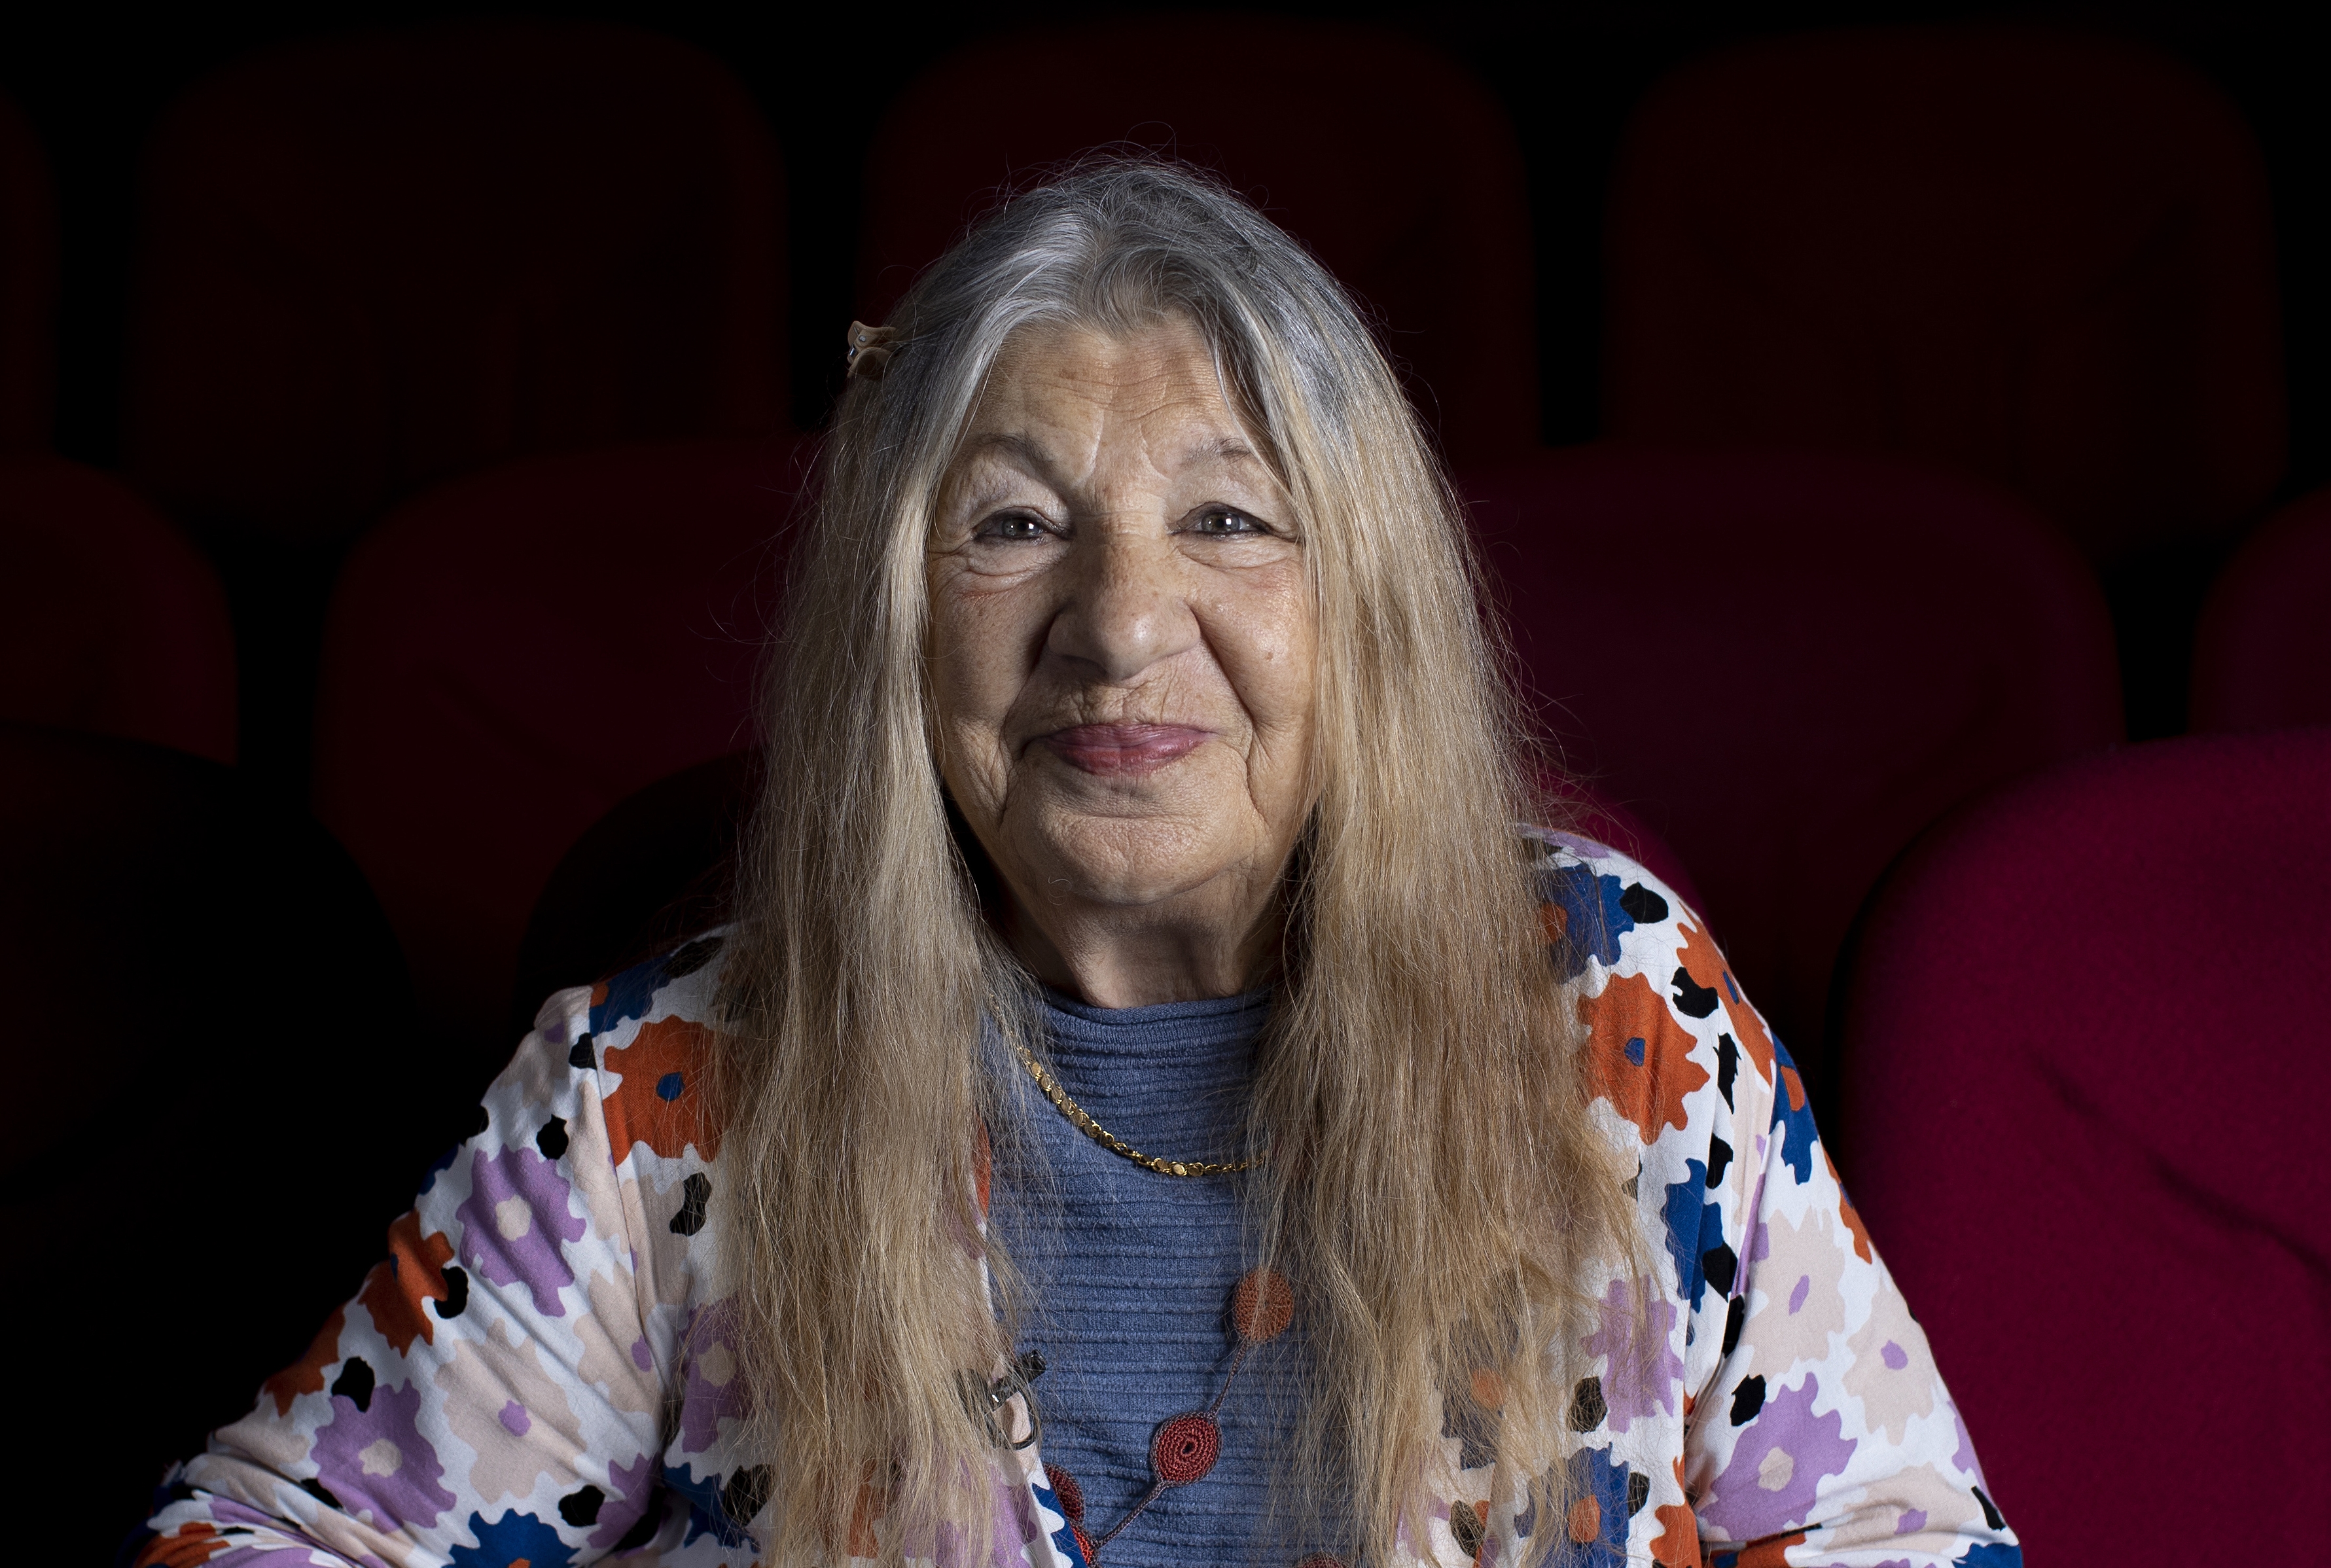 Tiyatro sanatçısı, yönetmen, şarkıcı ve eğitmen Ayla Algan, 86 yaşında hayata gözlerini yumdu. Algan'ın evinde senaryo okurken rahatsızlandığı öğrenildi. Algan, Paris’in ünlü konser salonu Olympia’da sahne alan ilk Türk sanatçıydı.